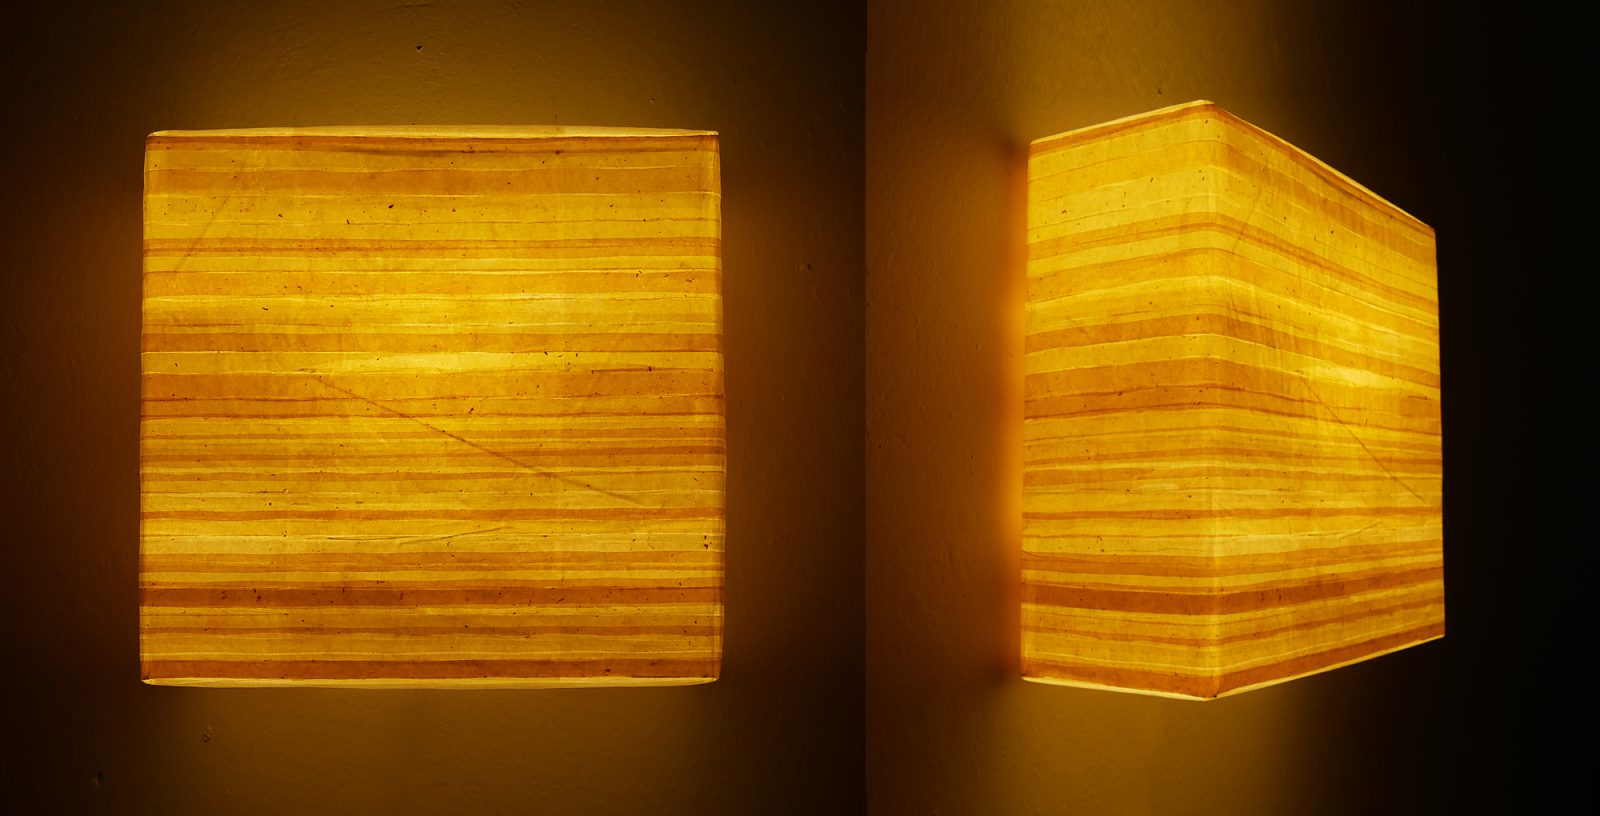 Leuchtobjekt – Kurkuma + Ölfarben auf Papier, 42 x 42 x 17 cm I 2019